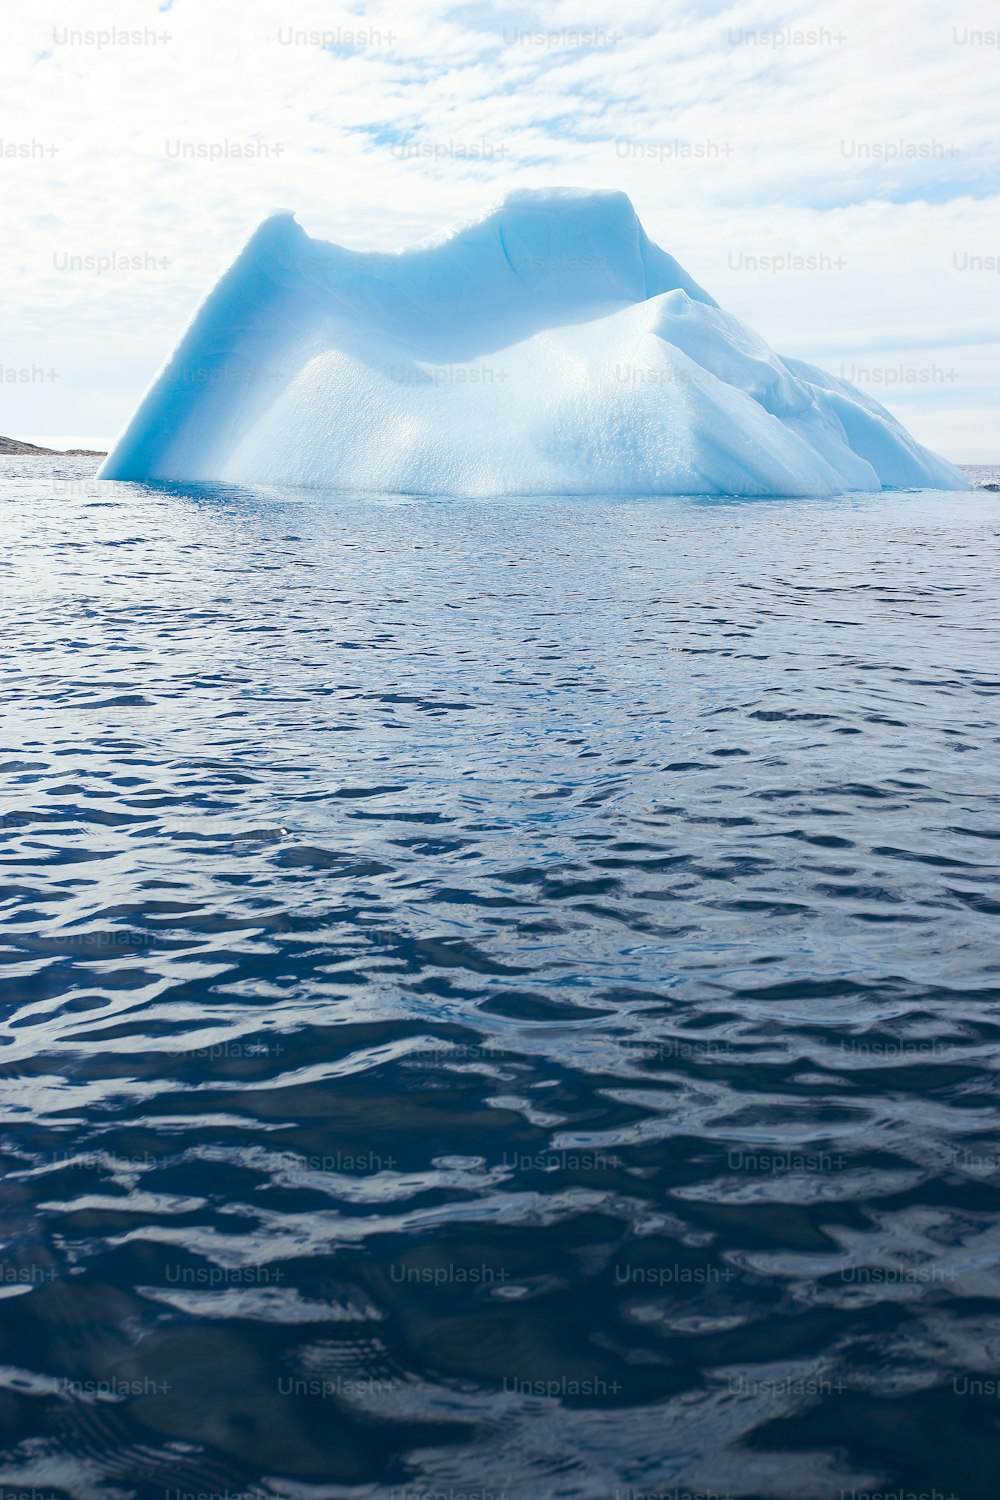 수역 위에 떠 있는 커다란 빙산